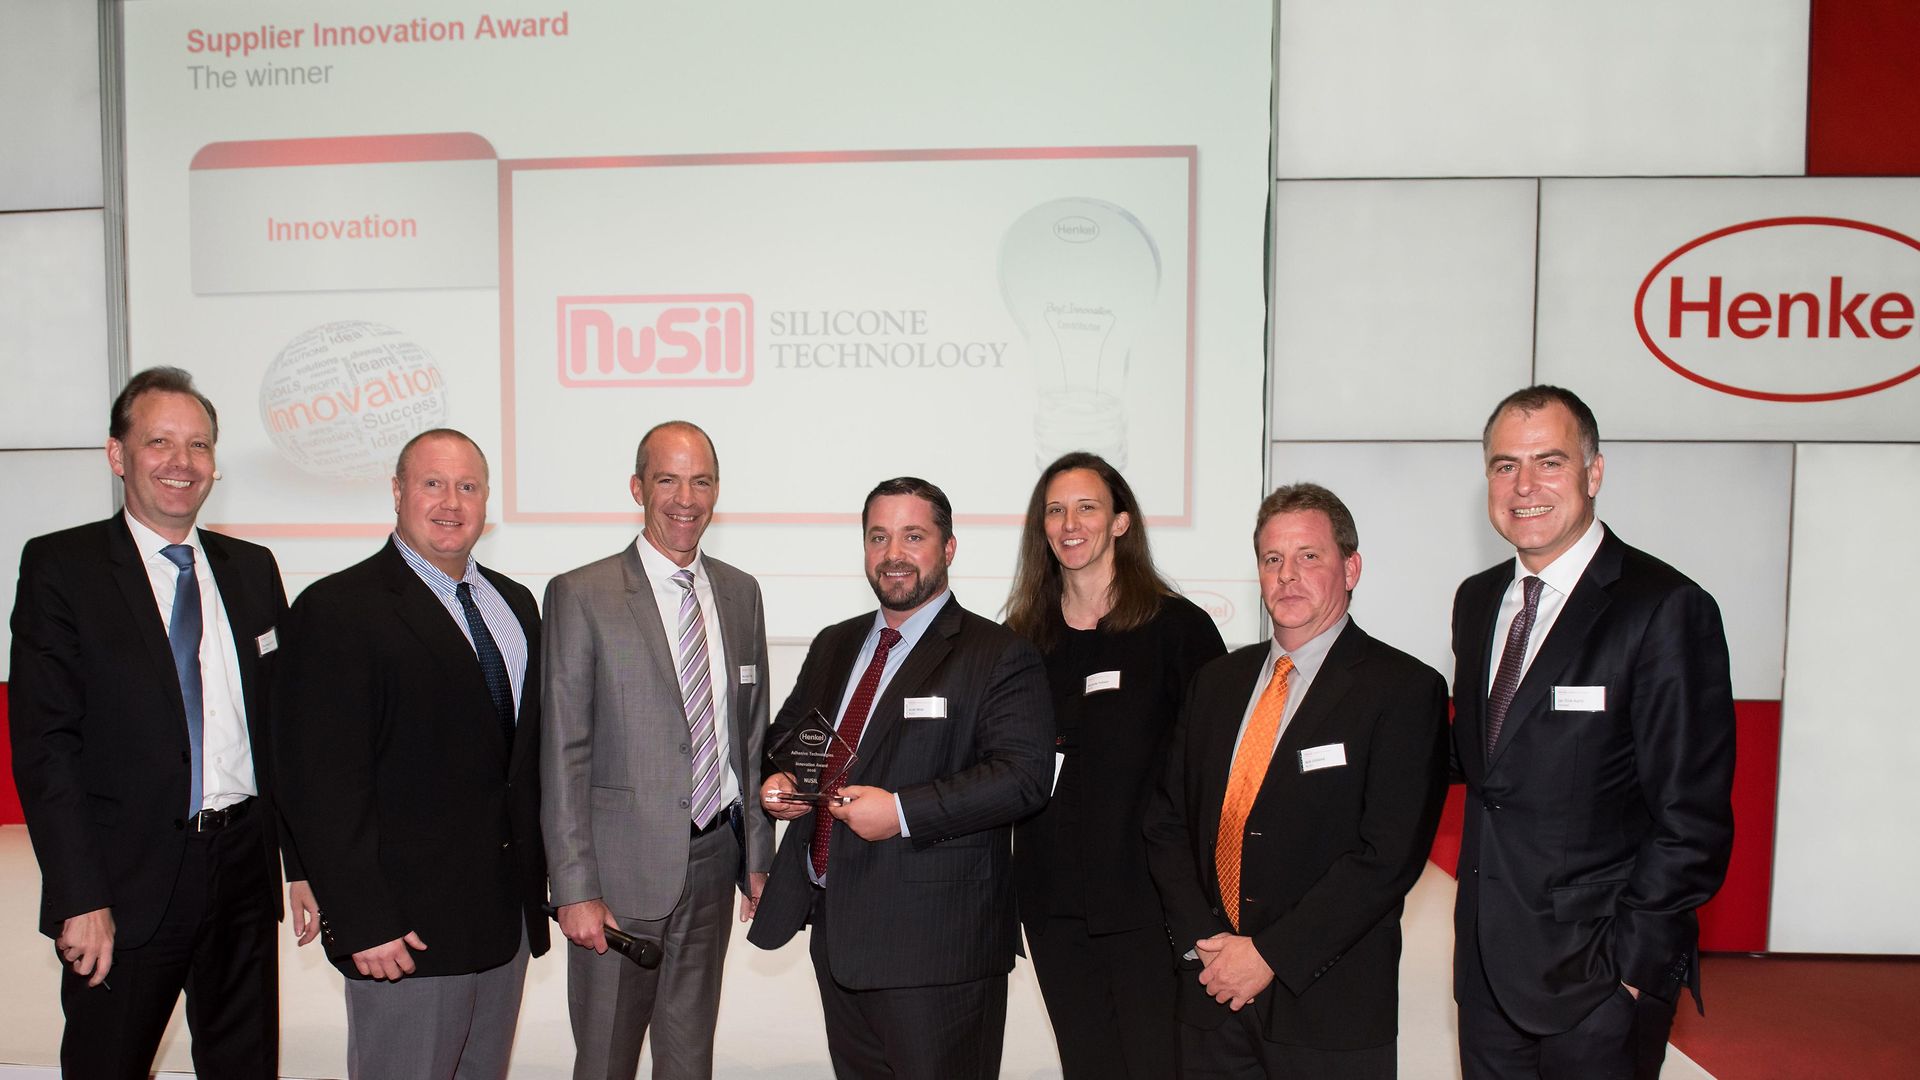 Supplier Innovation Award: NuSil